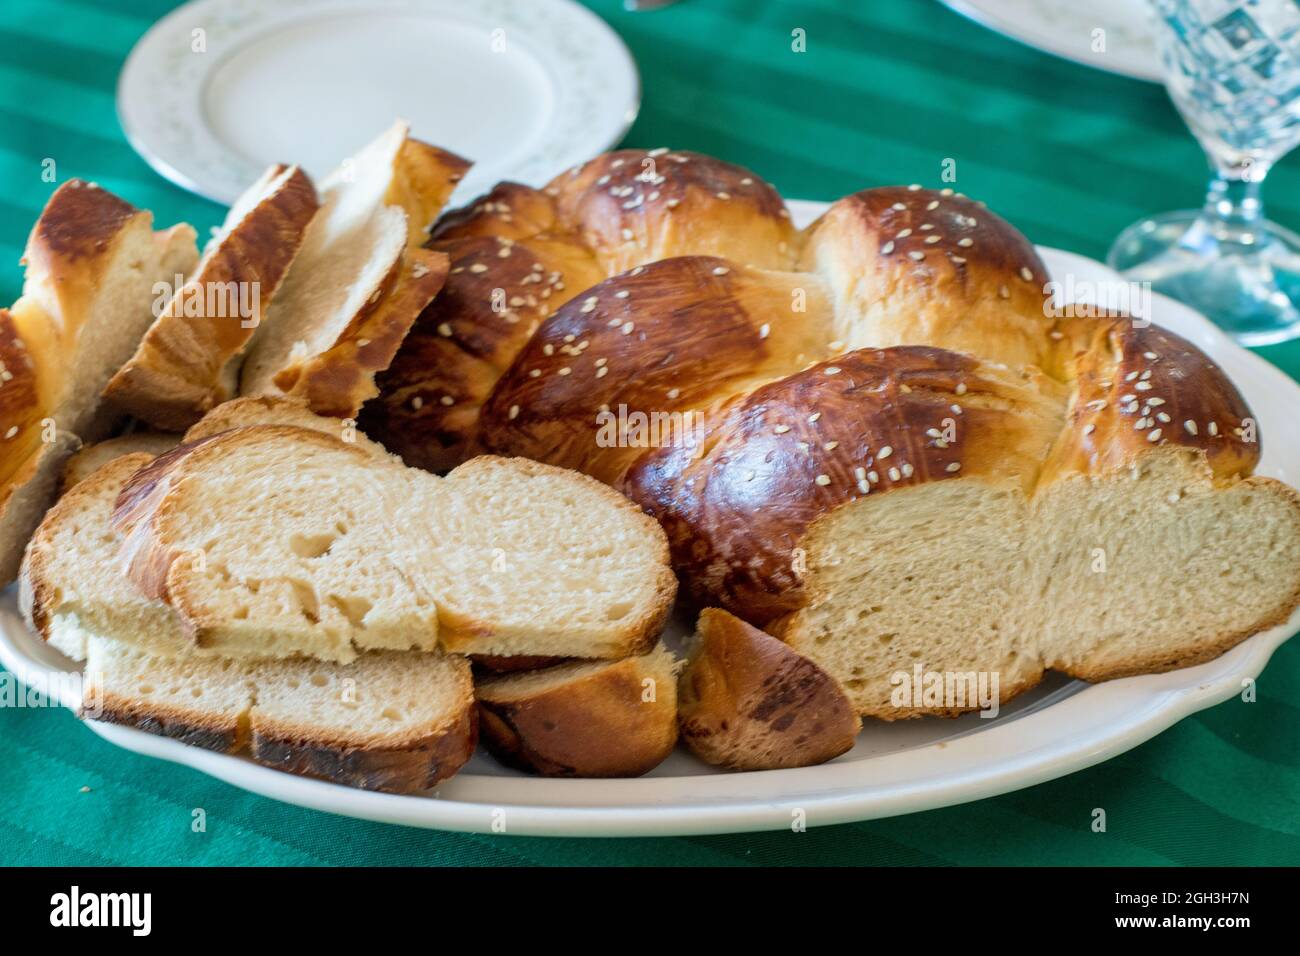 Le pain gallah, un casher, tressé aux œufs, est souvent servi dans les ménages juifs pendant les fêtes de Shabbat et les fêtes importantes. Banque D'Images